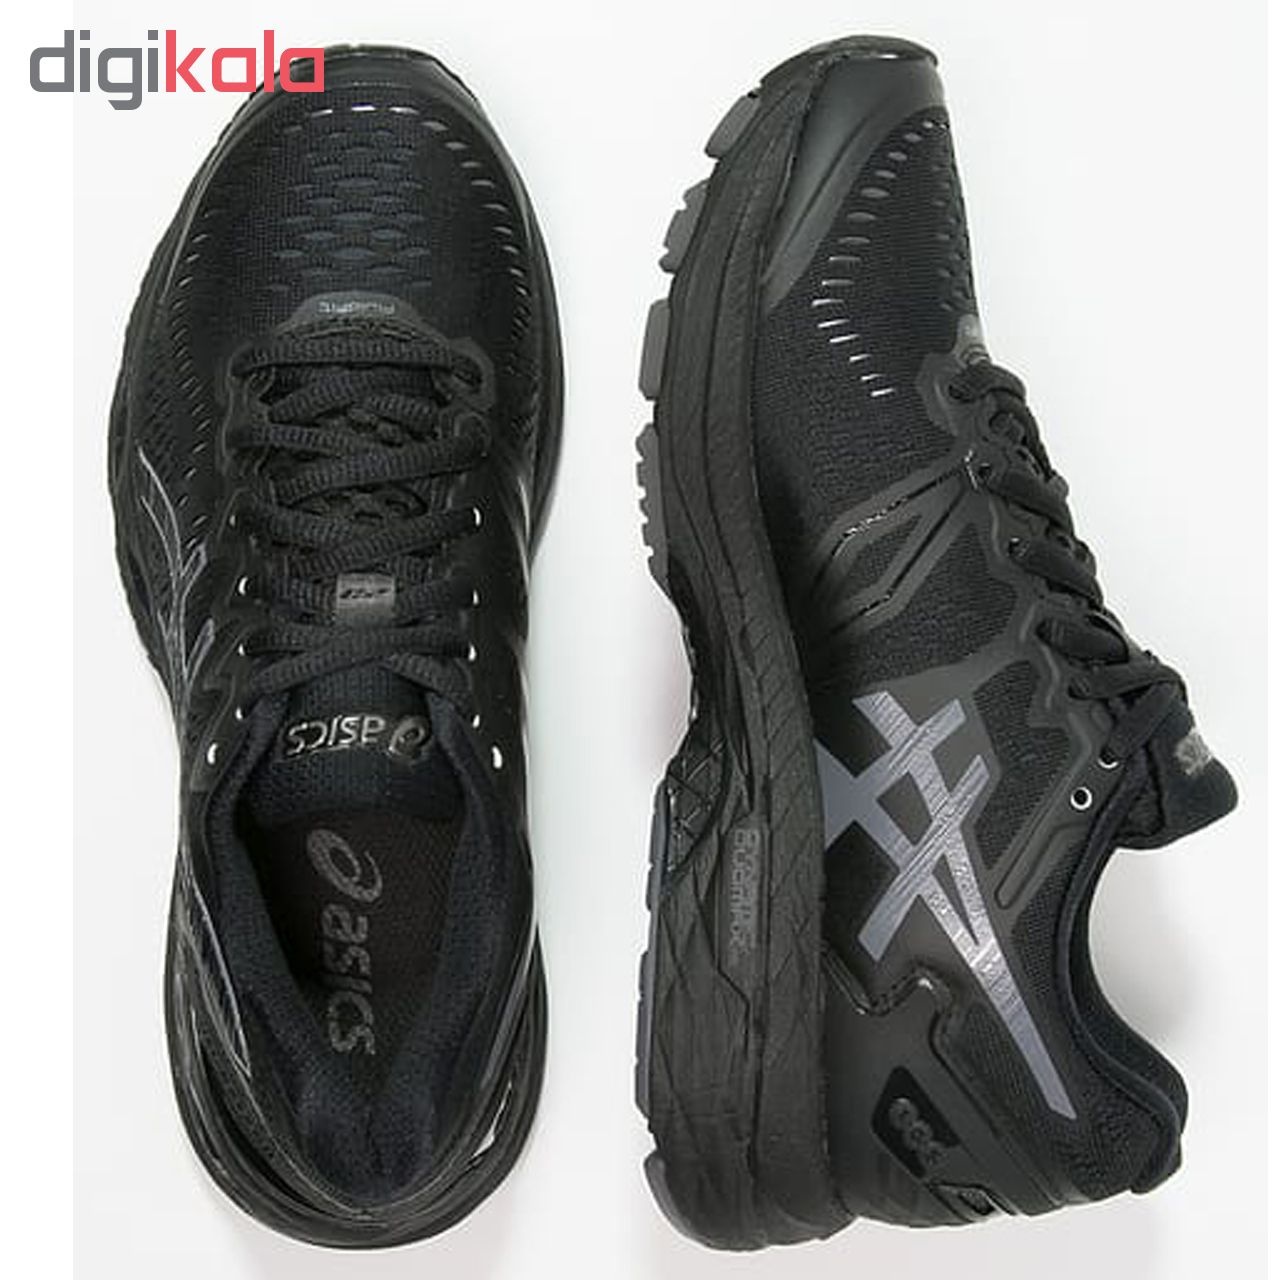 کفش ورزشی مخصوص دویدن و پیاده روی مردانه مدل Gel Kayano    کد اصلی 122T64N